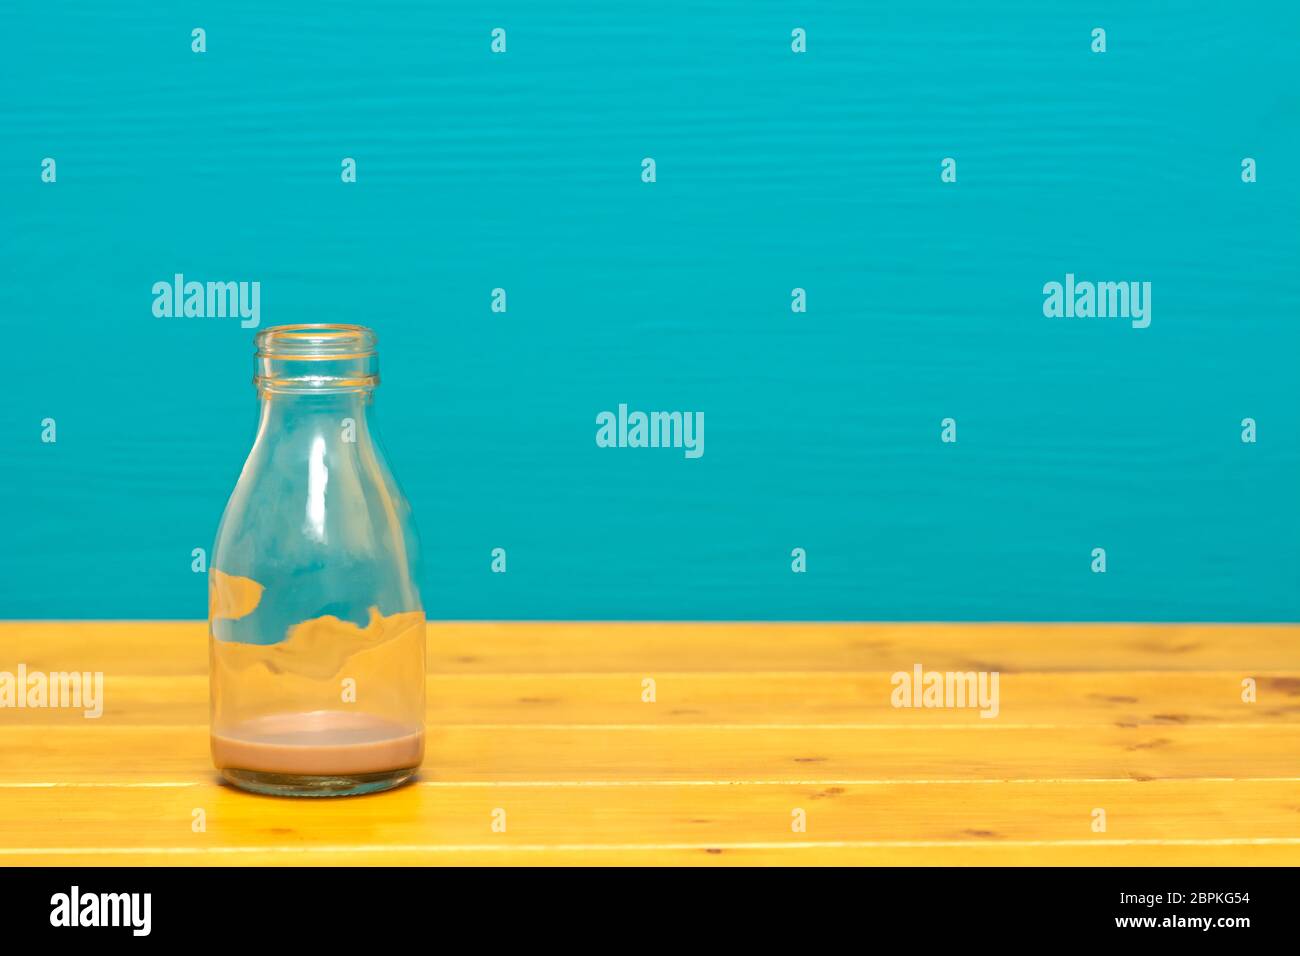 Ein Drittel pint Glas Milch Flasche mit Abschaum der Schokolade Milchshake, auf einen hölzernen Tisch gegen einen hellen Teal gemalten Hintergrund Stockfoto